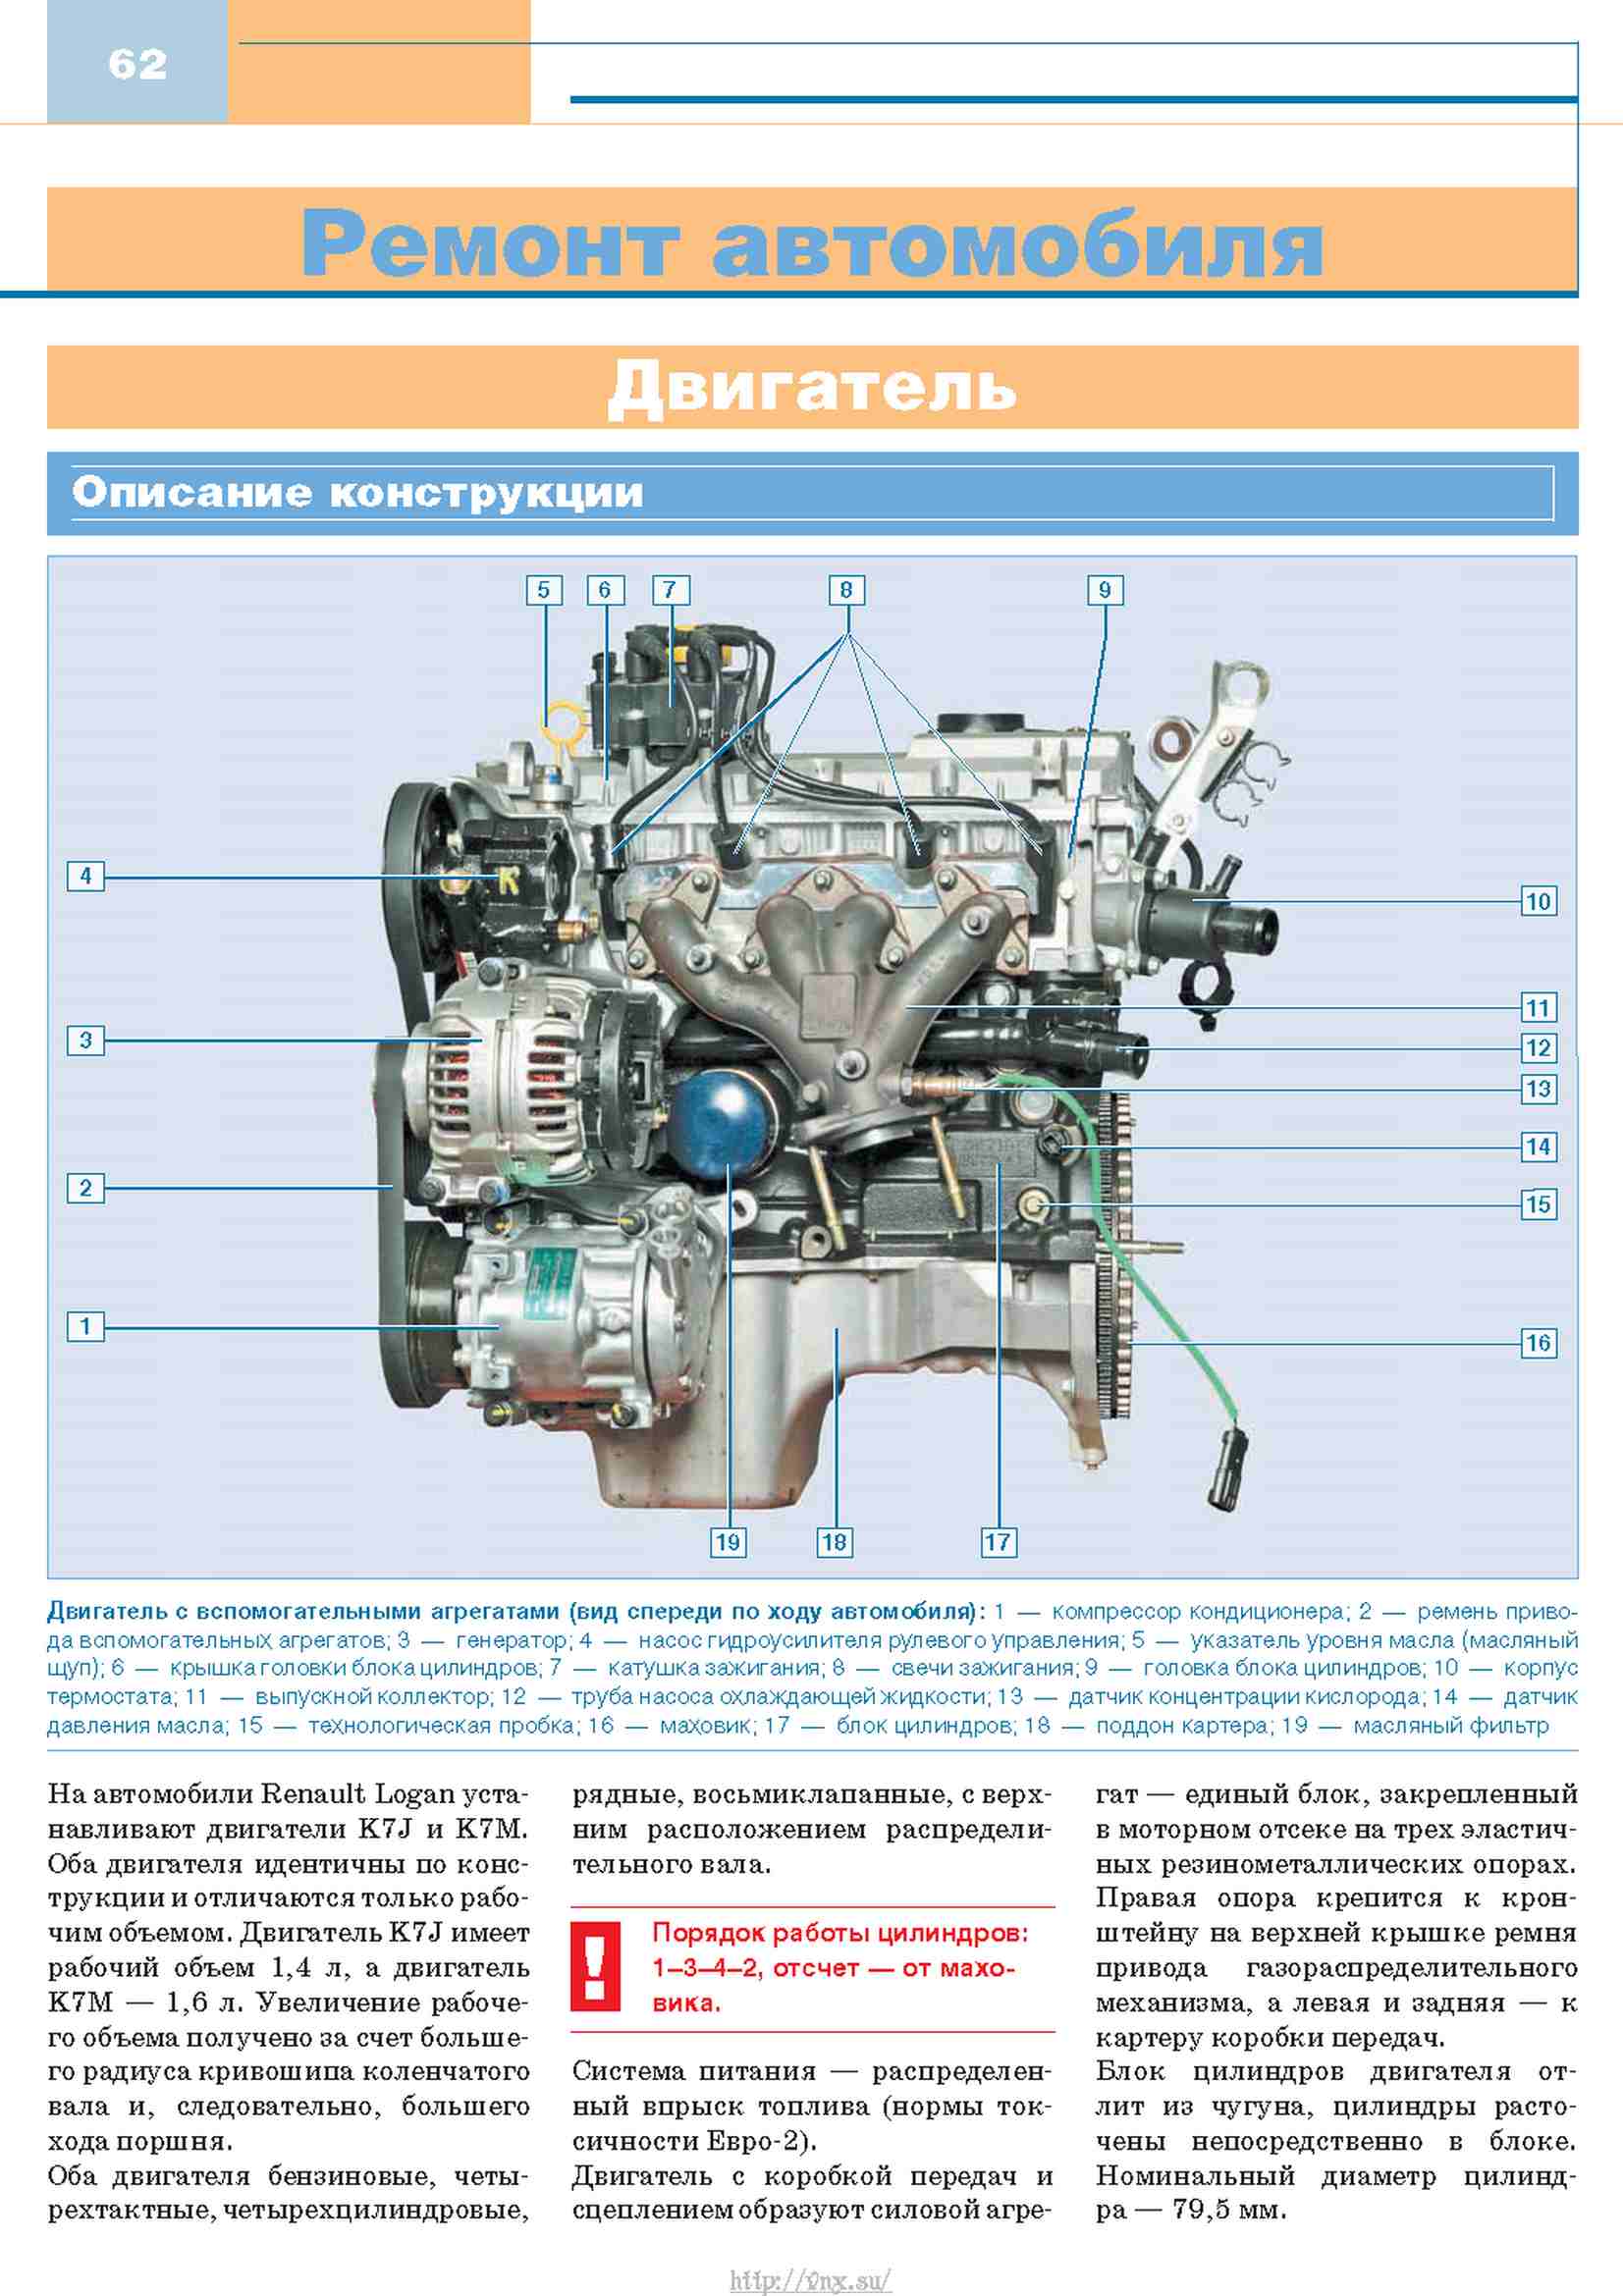 Двигатель renault k7m (1.6 8v): описание, характеристики, модификации, слабые места, ремонт